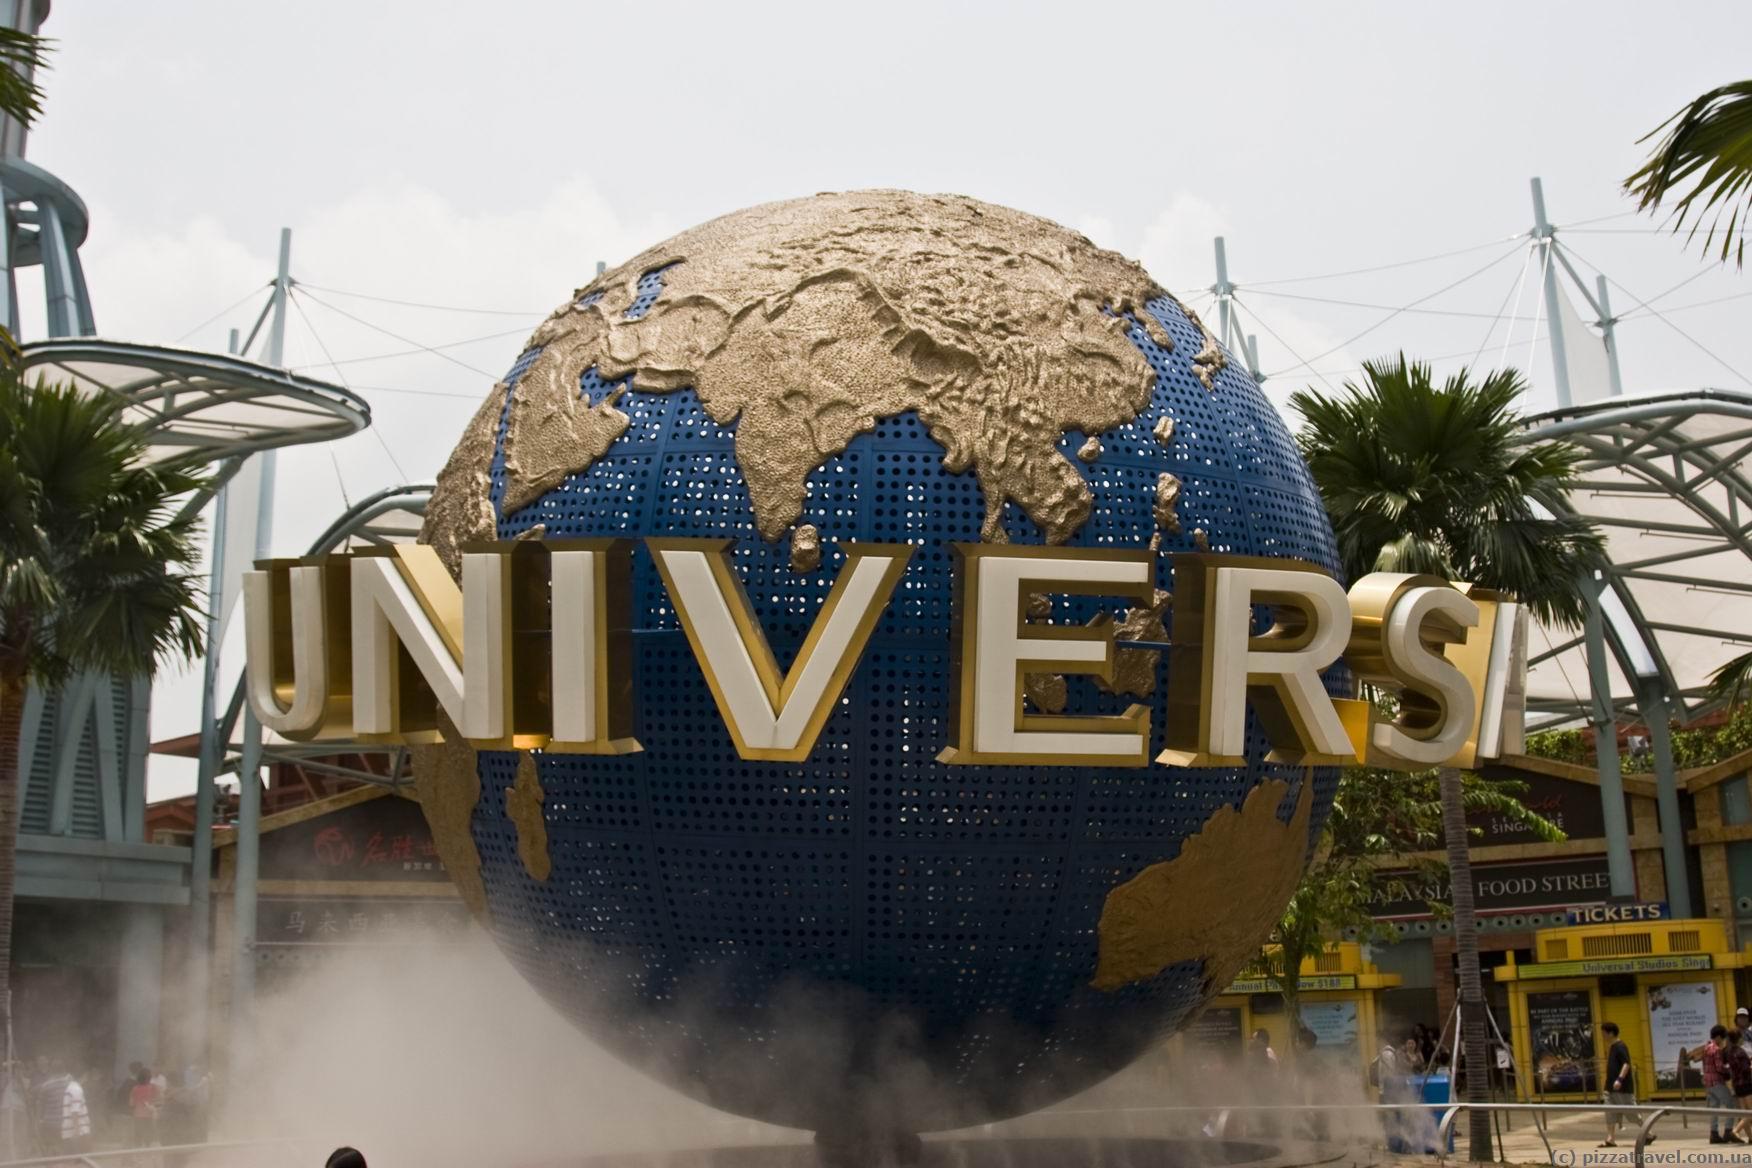 Universal Studios Theme Park - Singapore - Blog about interesting places